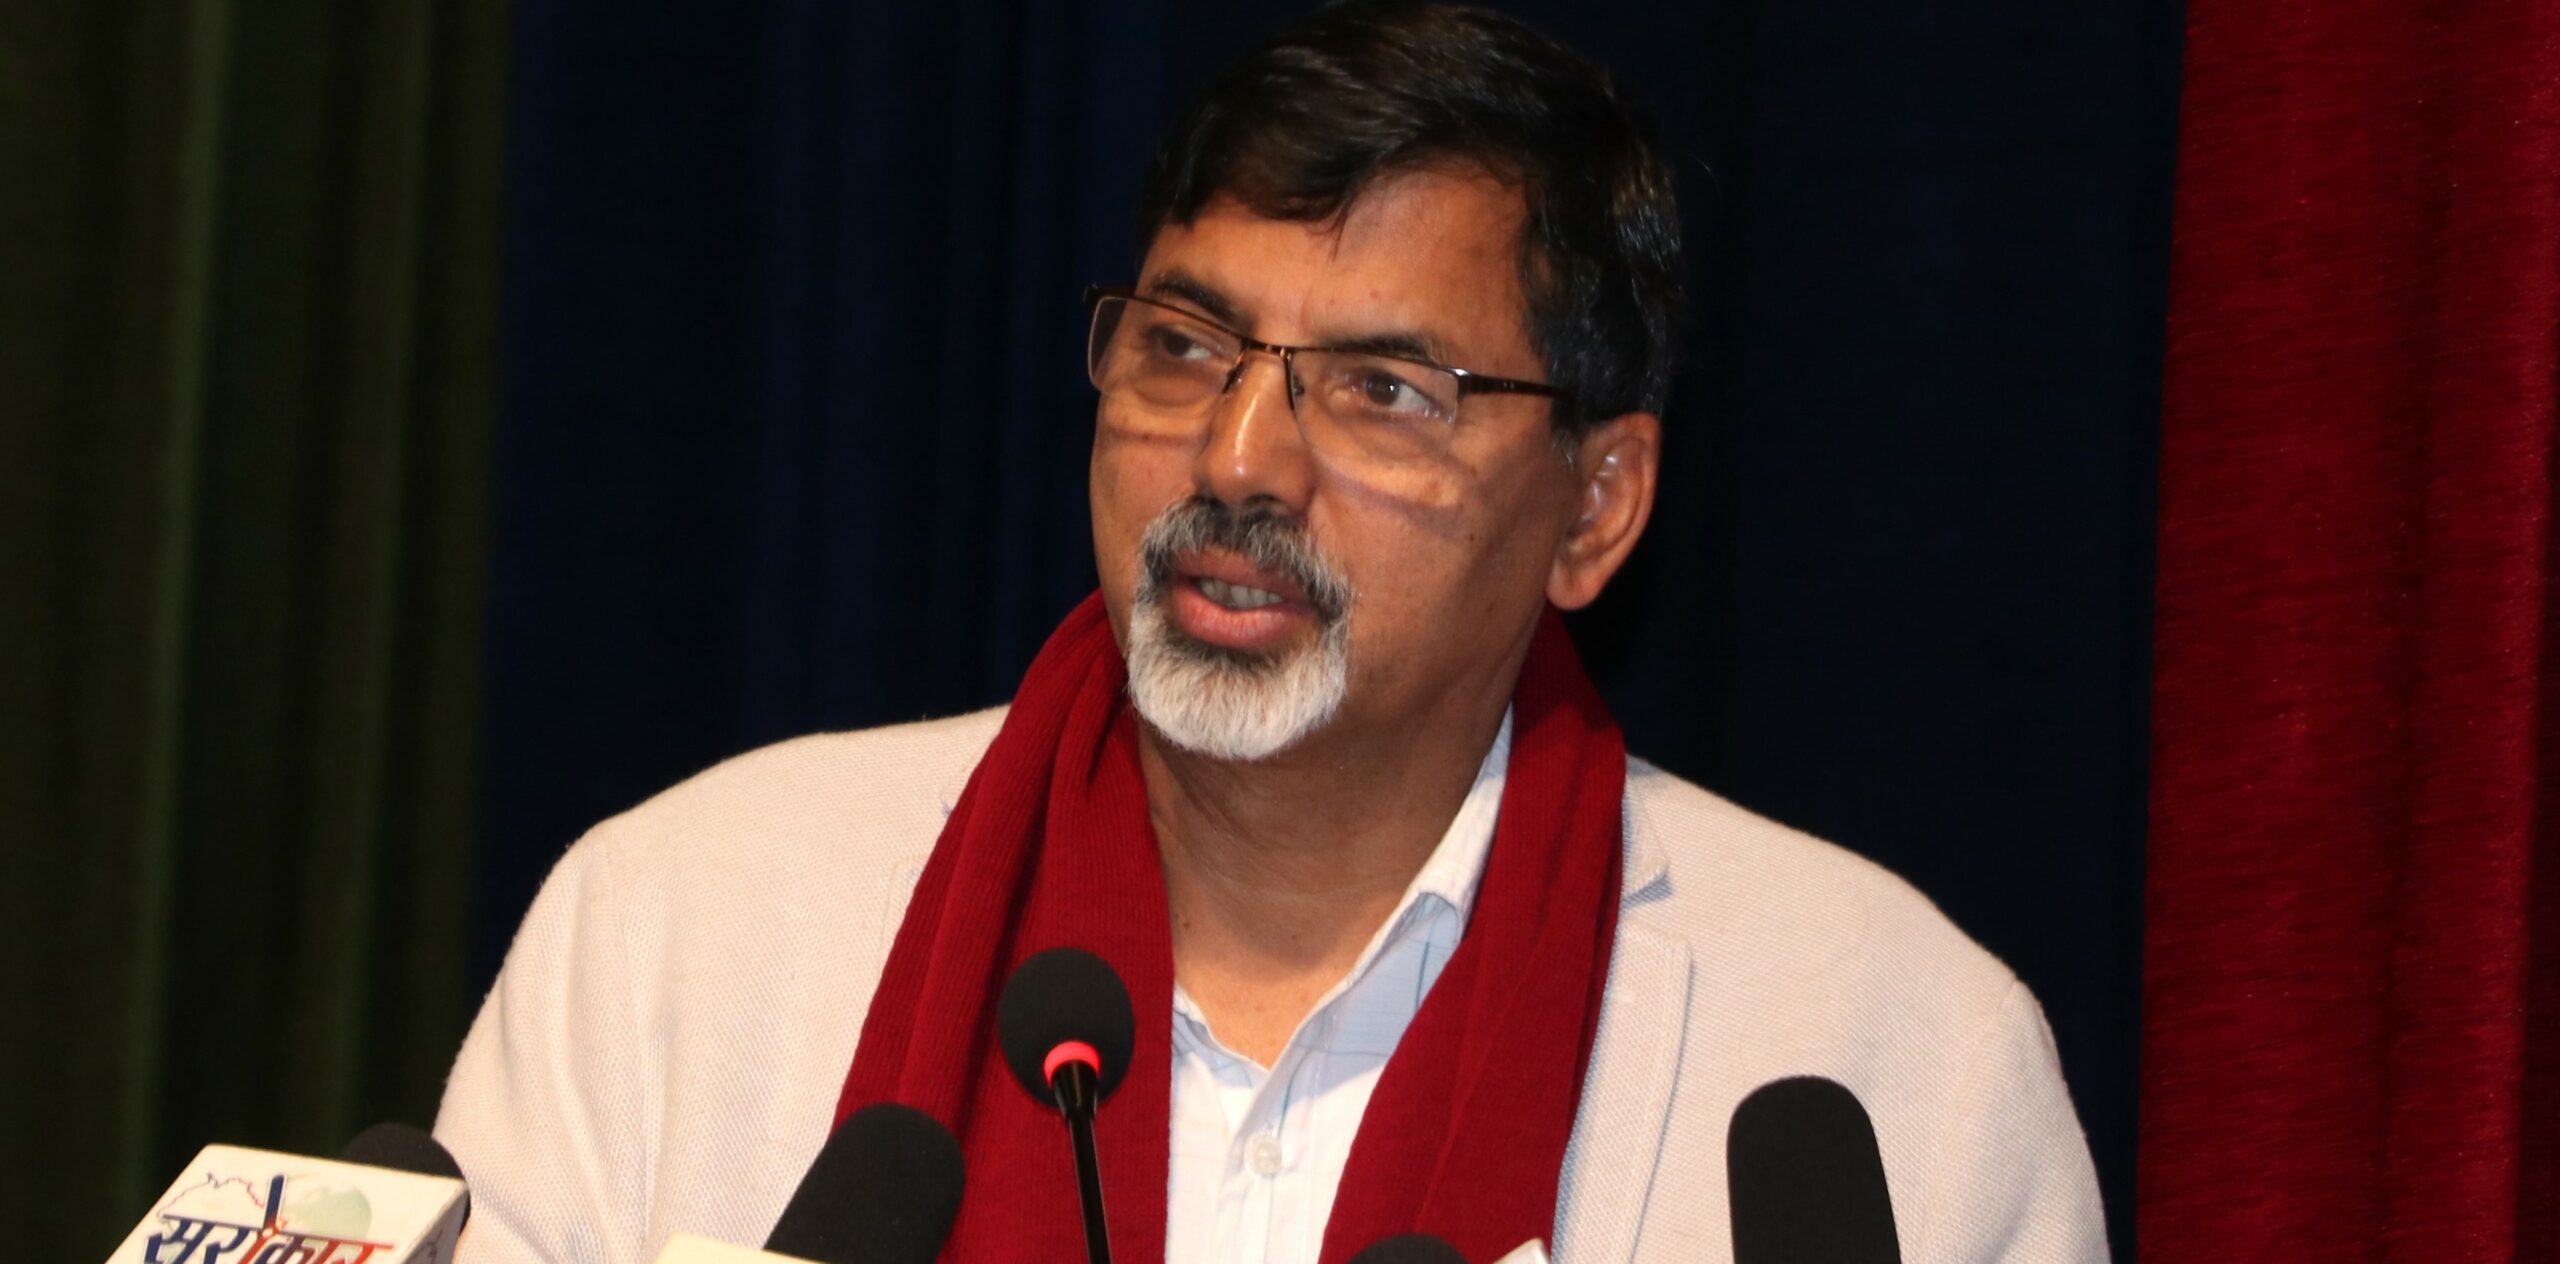 राष्ट्रपतिको सम्बन्धमा सत्तारुढ गठबन्धनमा समस्या हुदैन : जनार्दन शर्मा